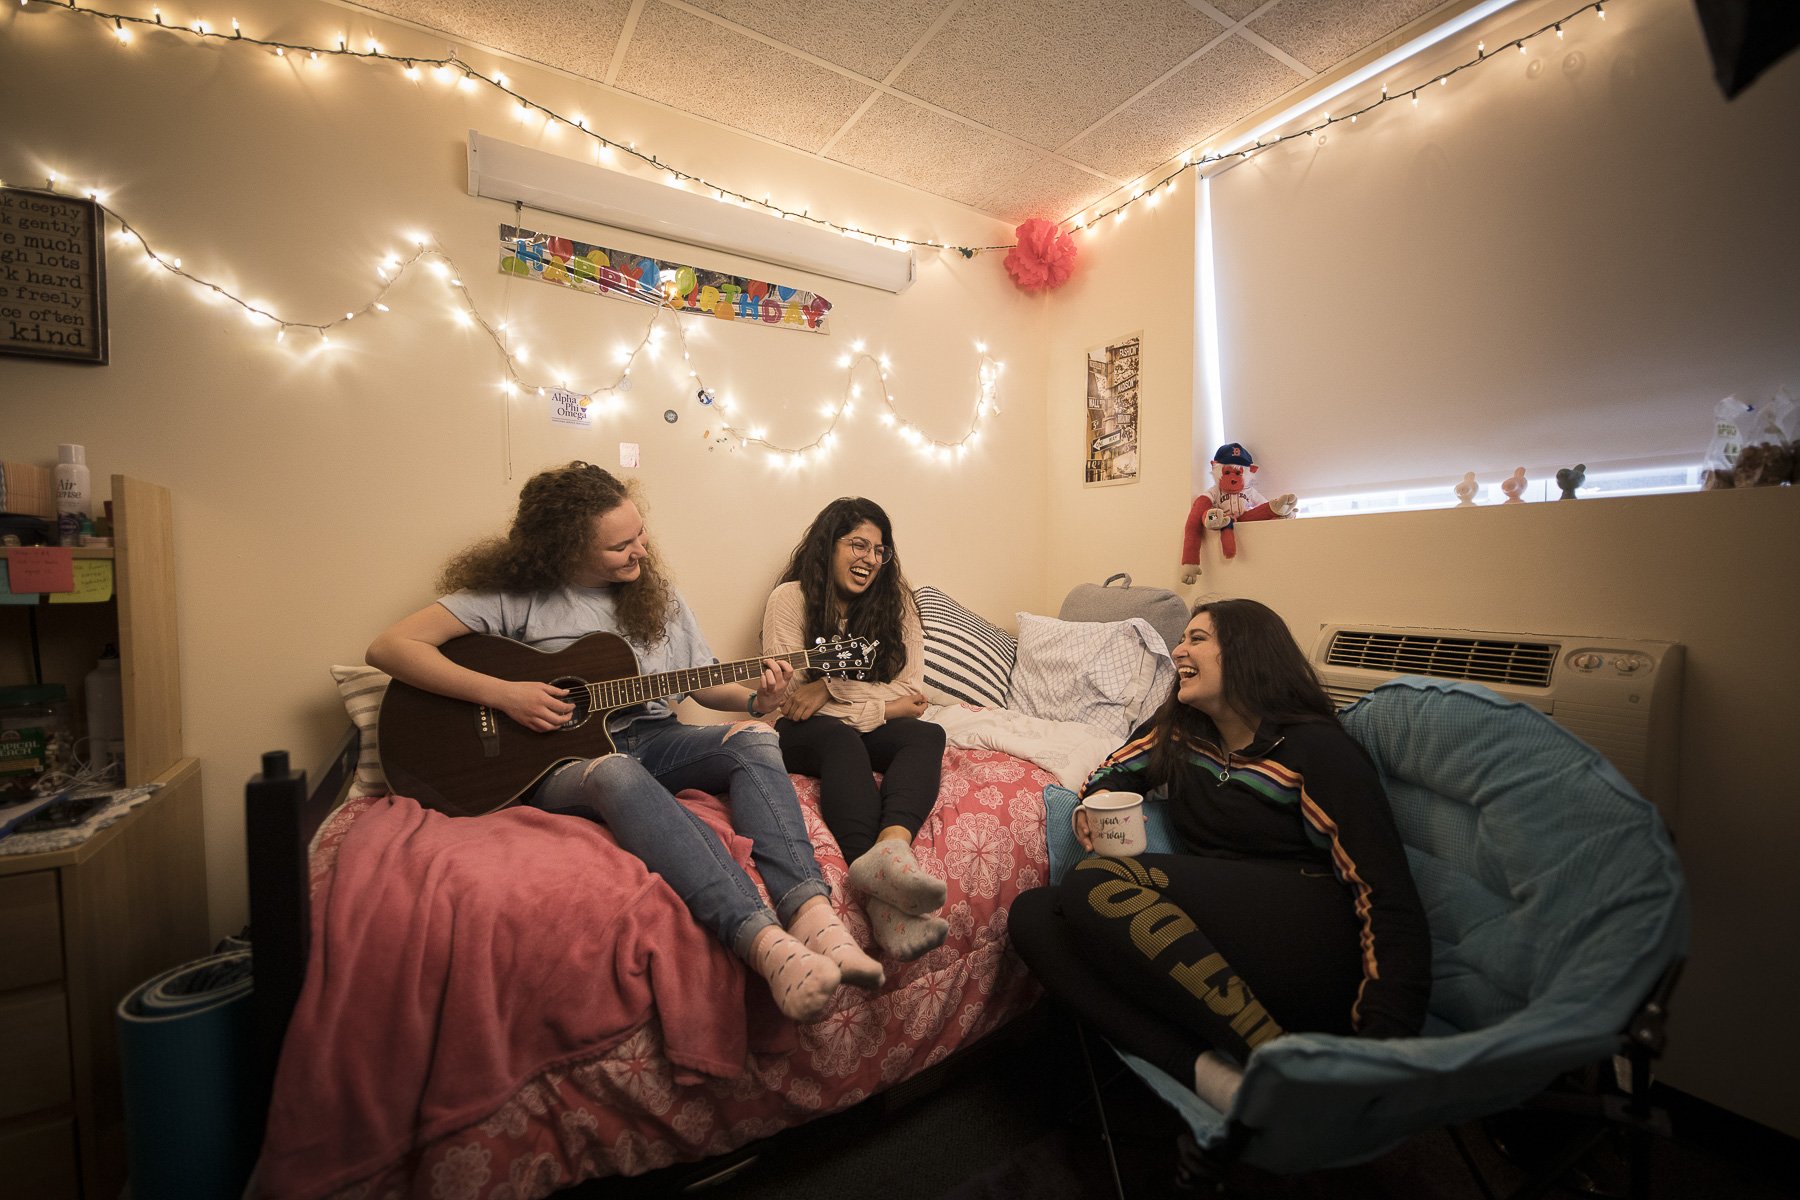 Bentley students in a dorm